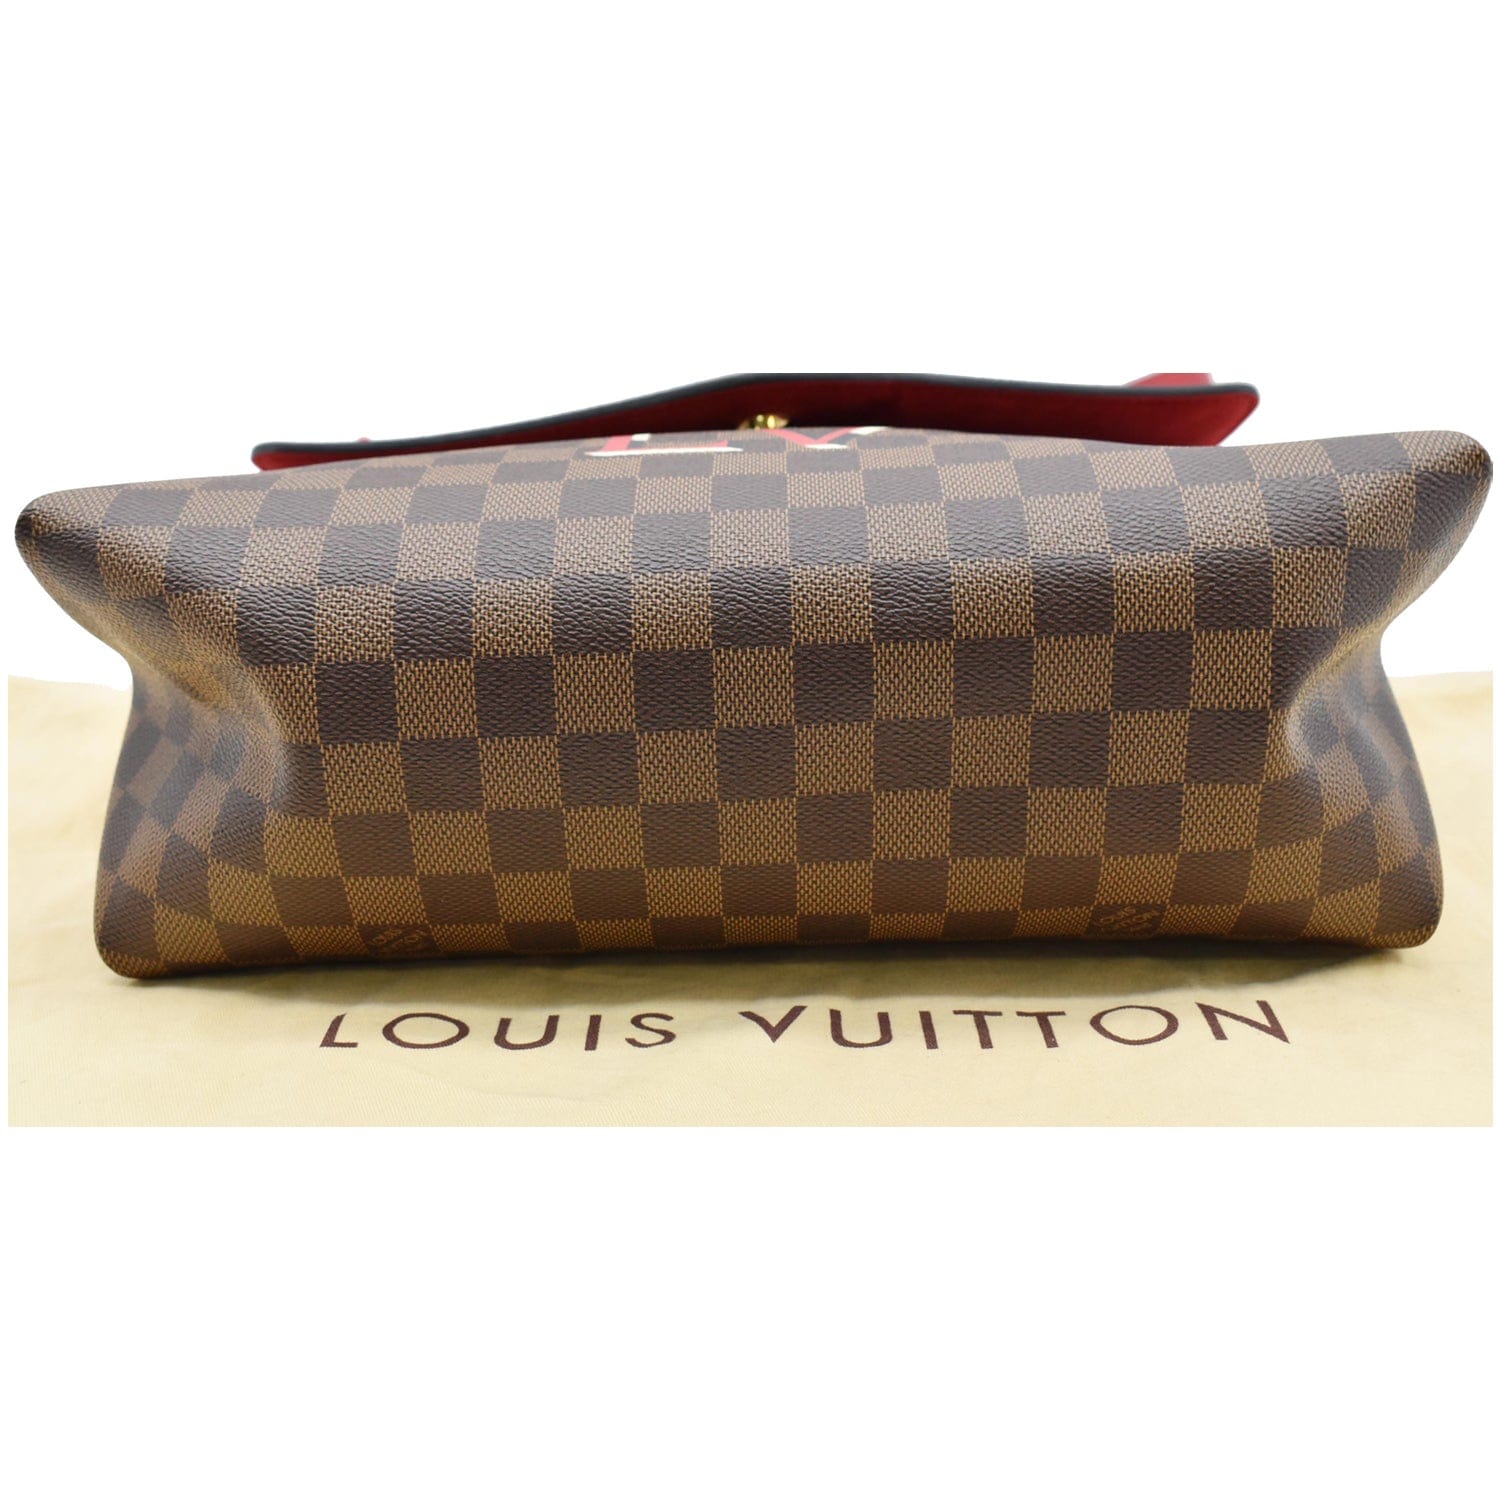 Beaubourg cloth bag Louis Vuitton Brown in Cloth - 34553532